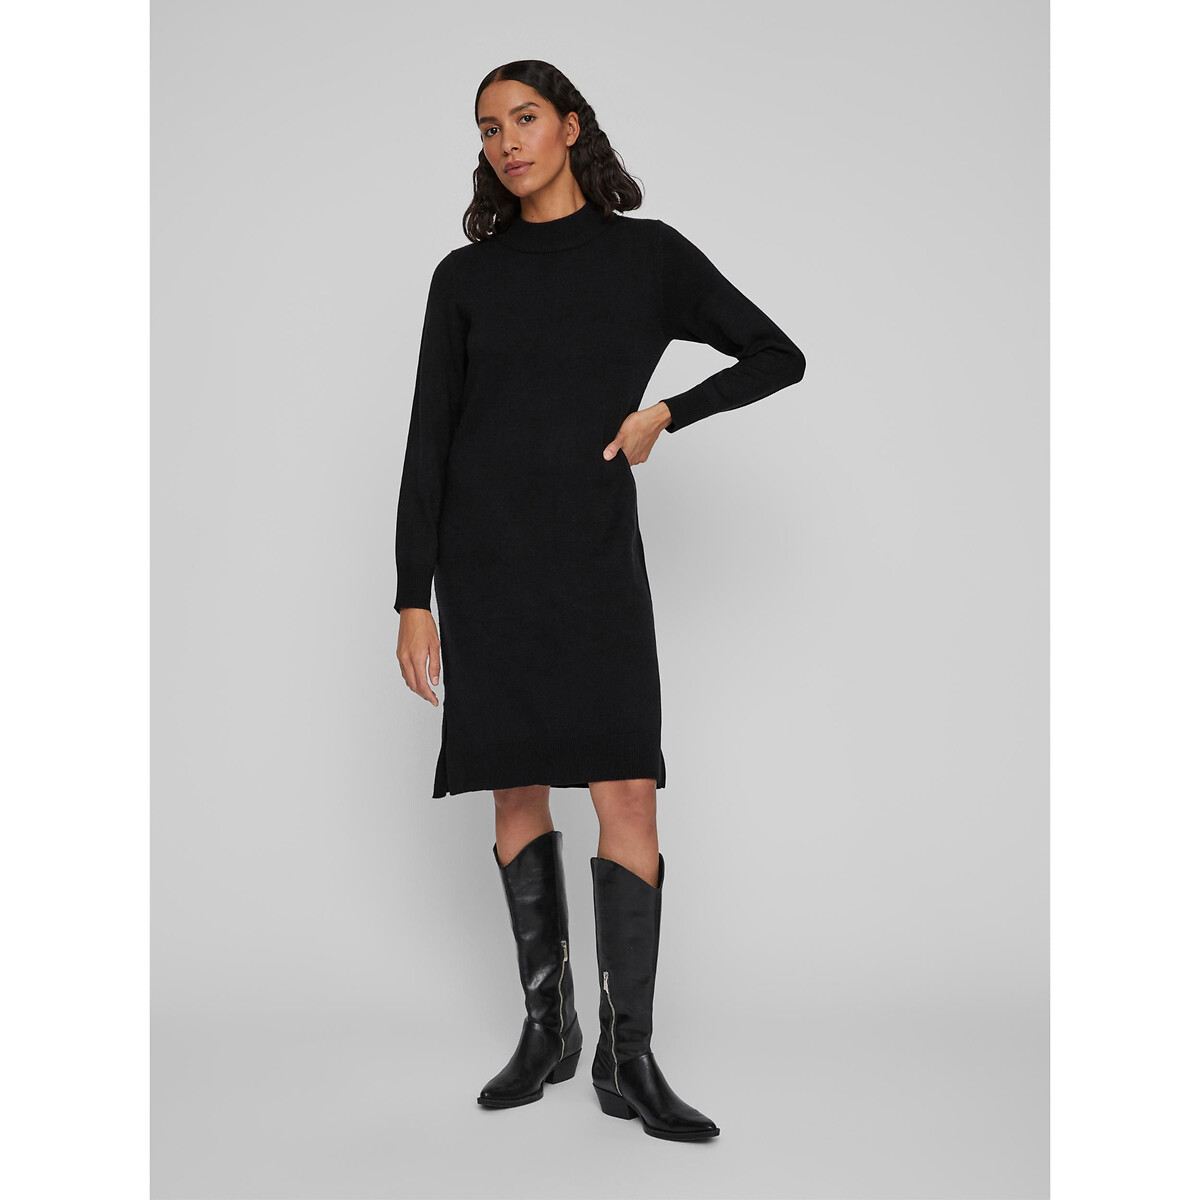 Платье-пуловер VILA Платье-пуловер Миди из тонкого трикотажа воротник-стойка XS черный, размер XS - фото 4